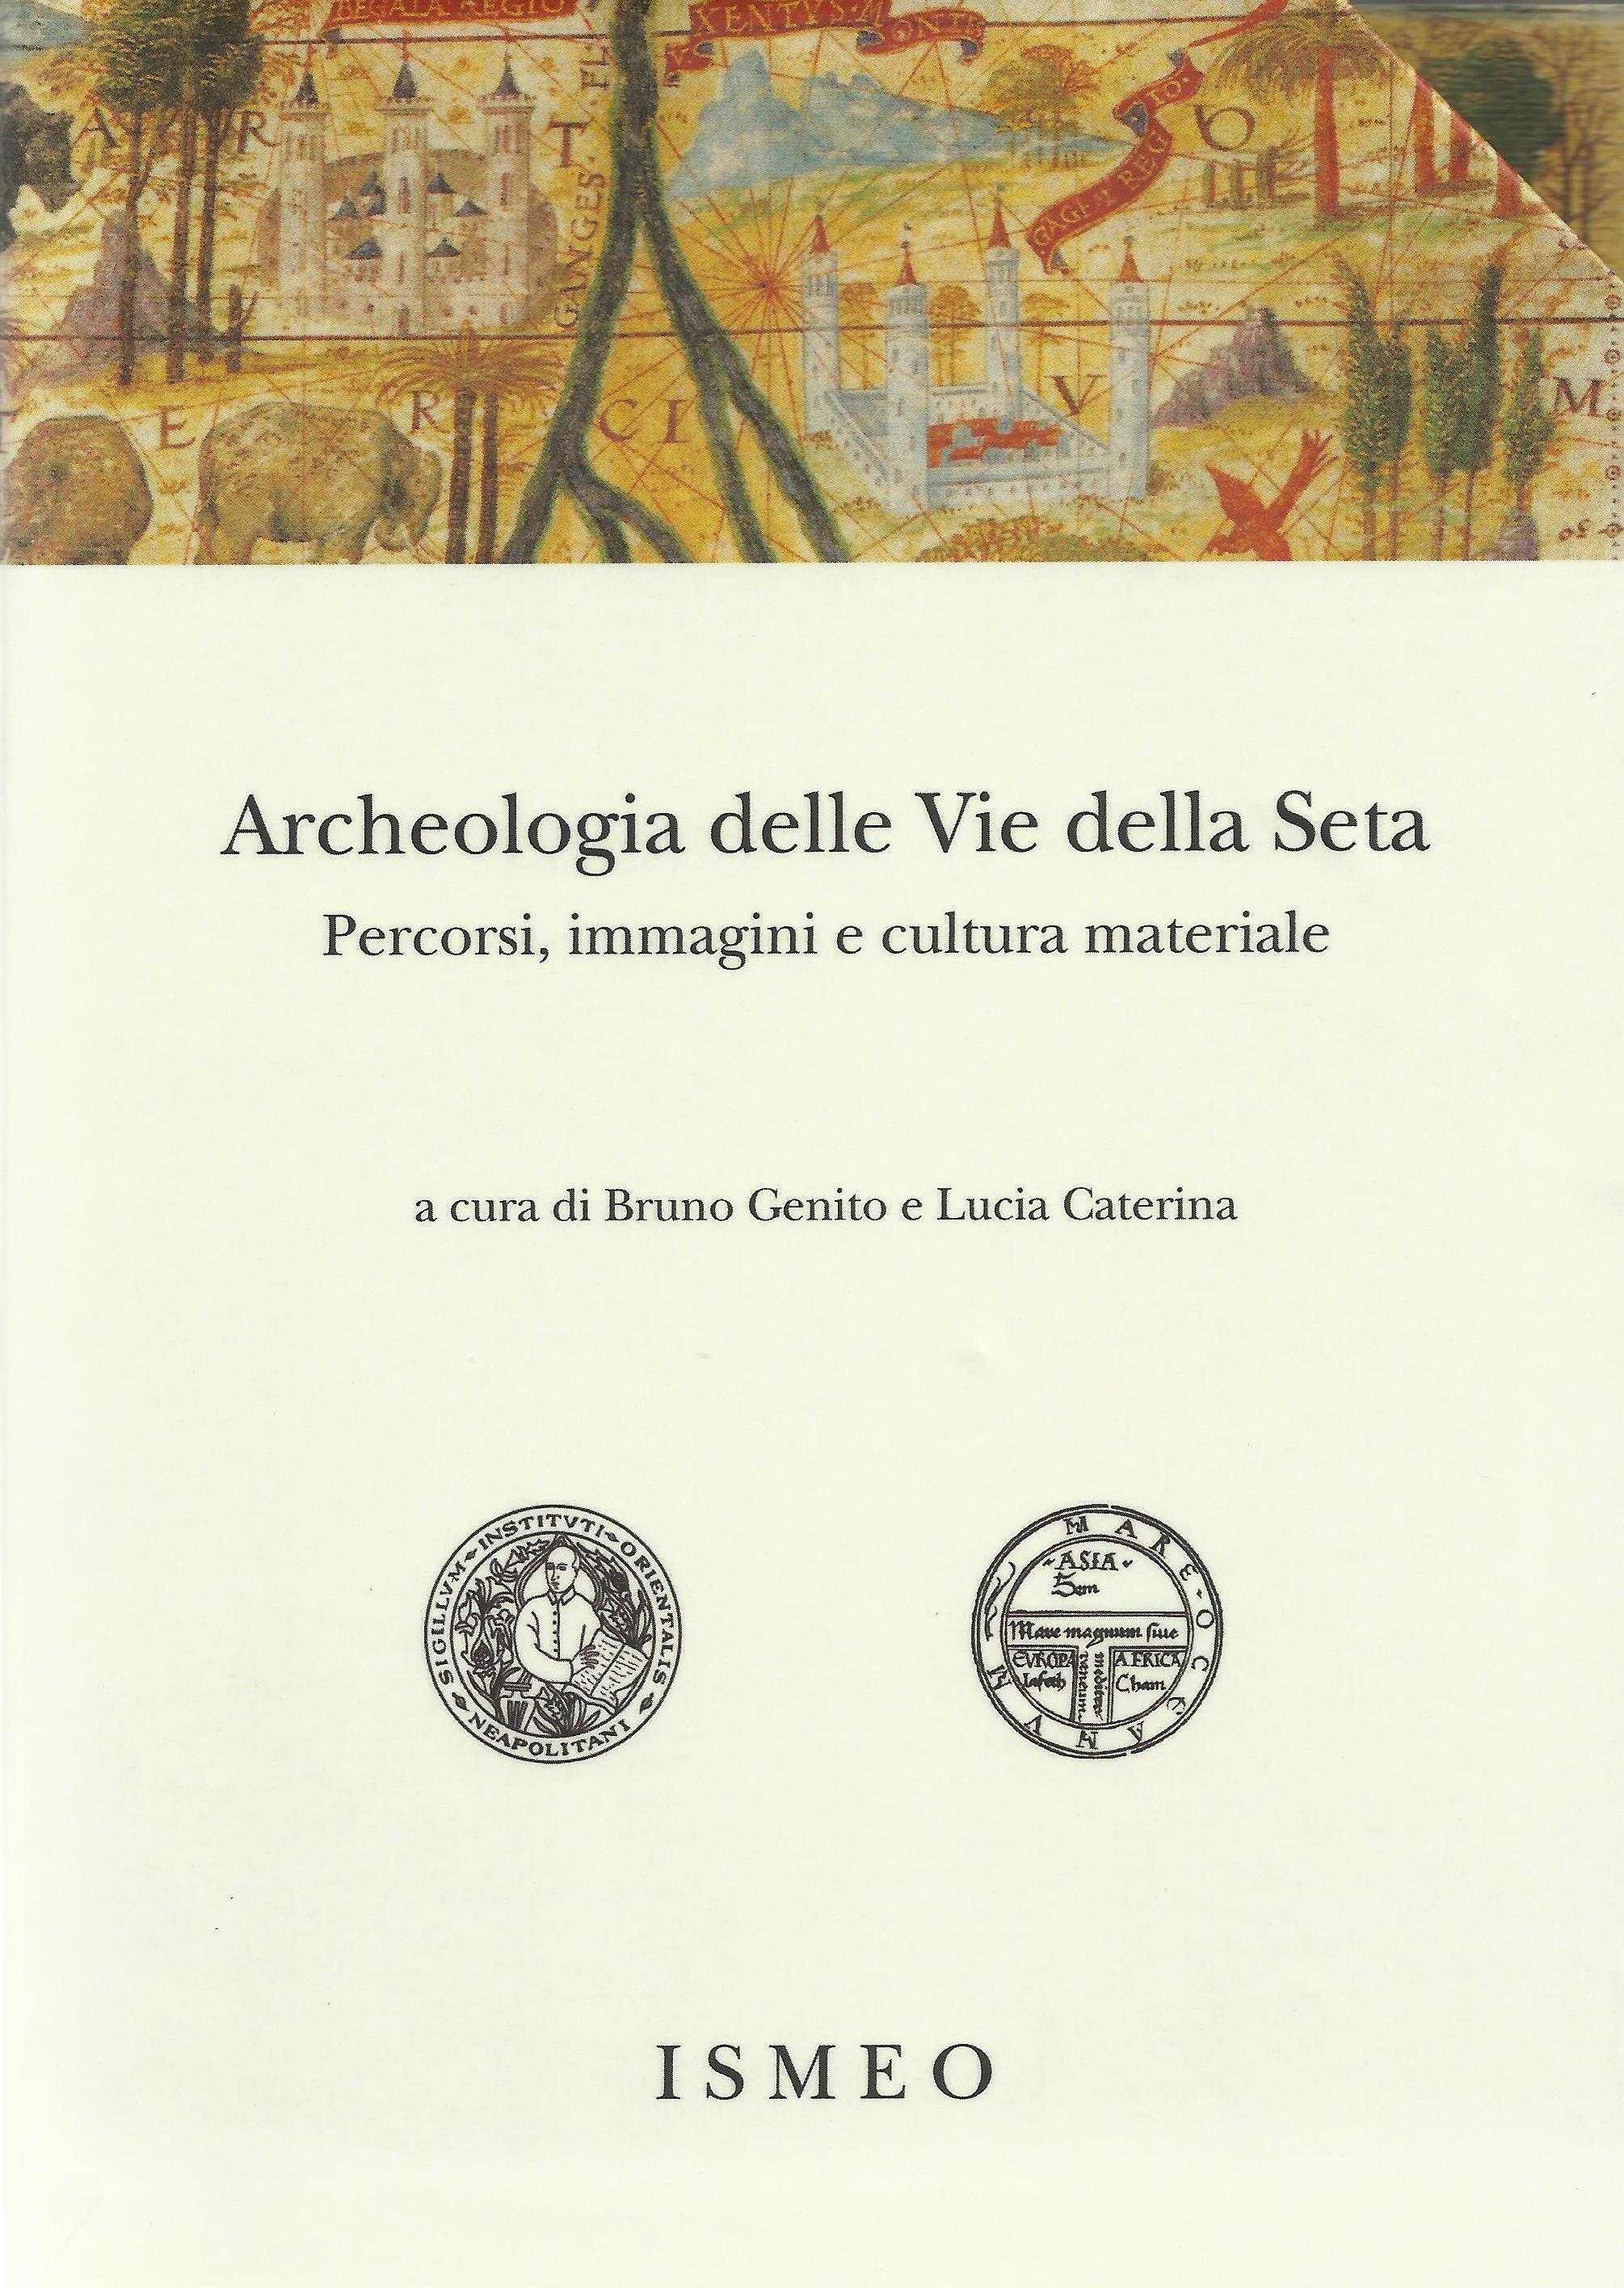 Archeologia delle Vie della Seta<br/>
Percorsi, immagini e cultura materiale